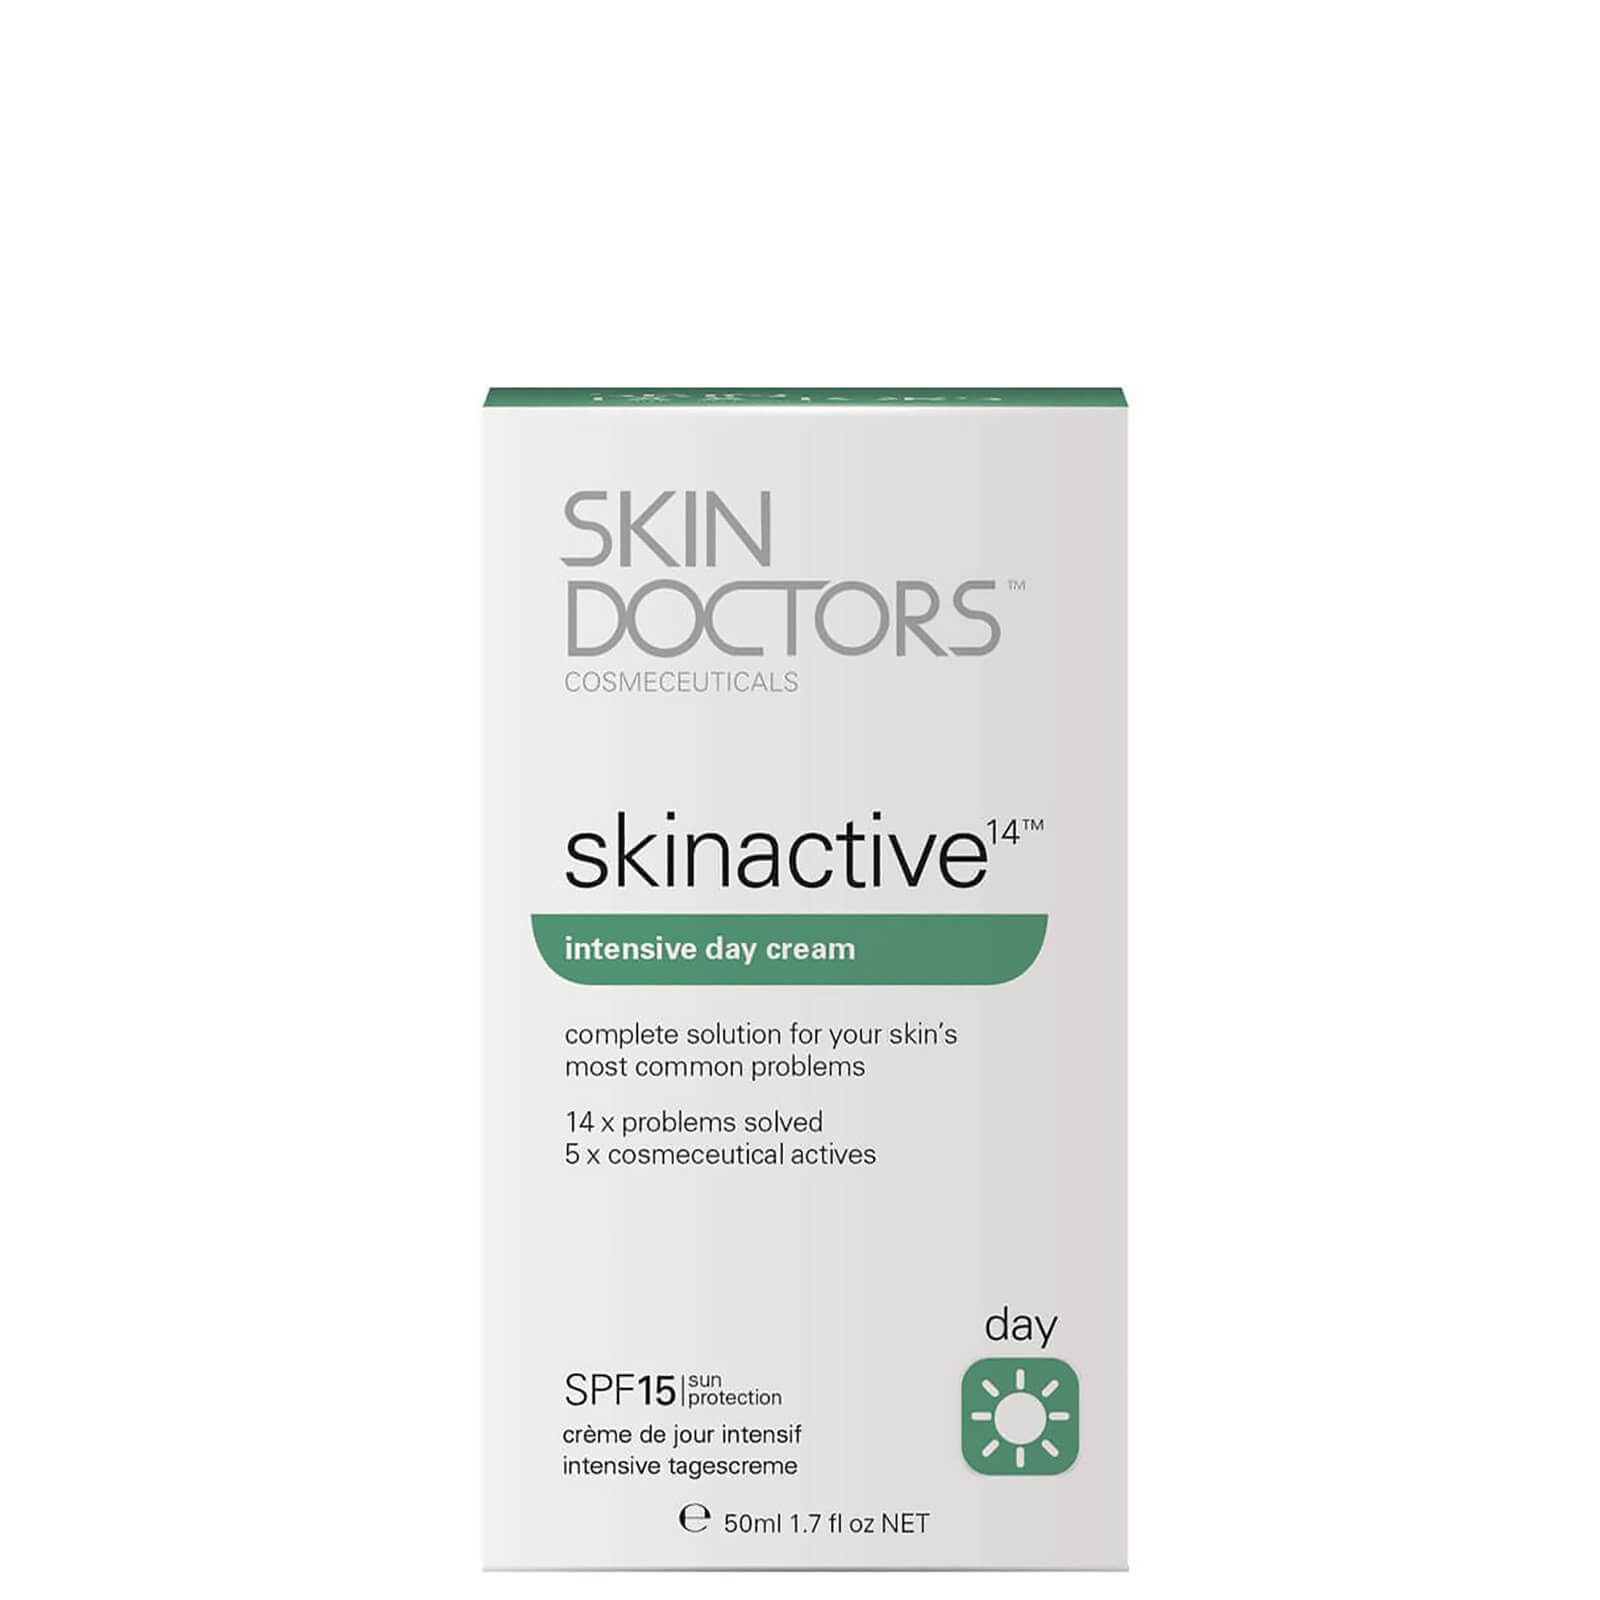 Skinactive 14 Intensive Day Cream de Skin Doctors (50 ml)